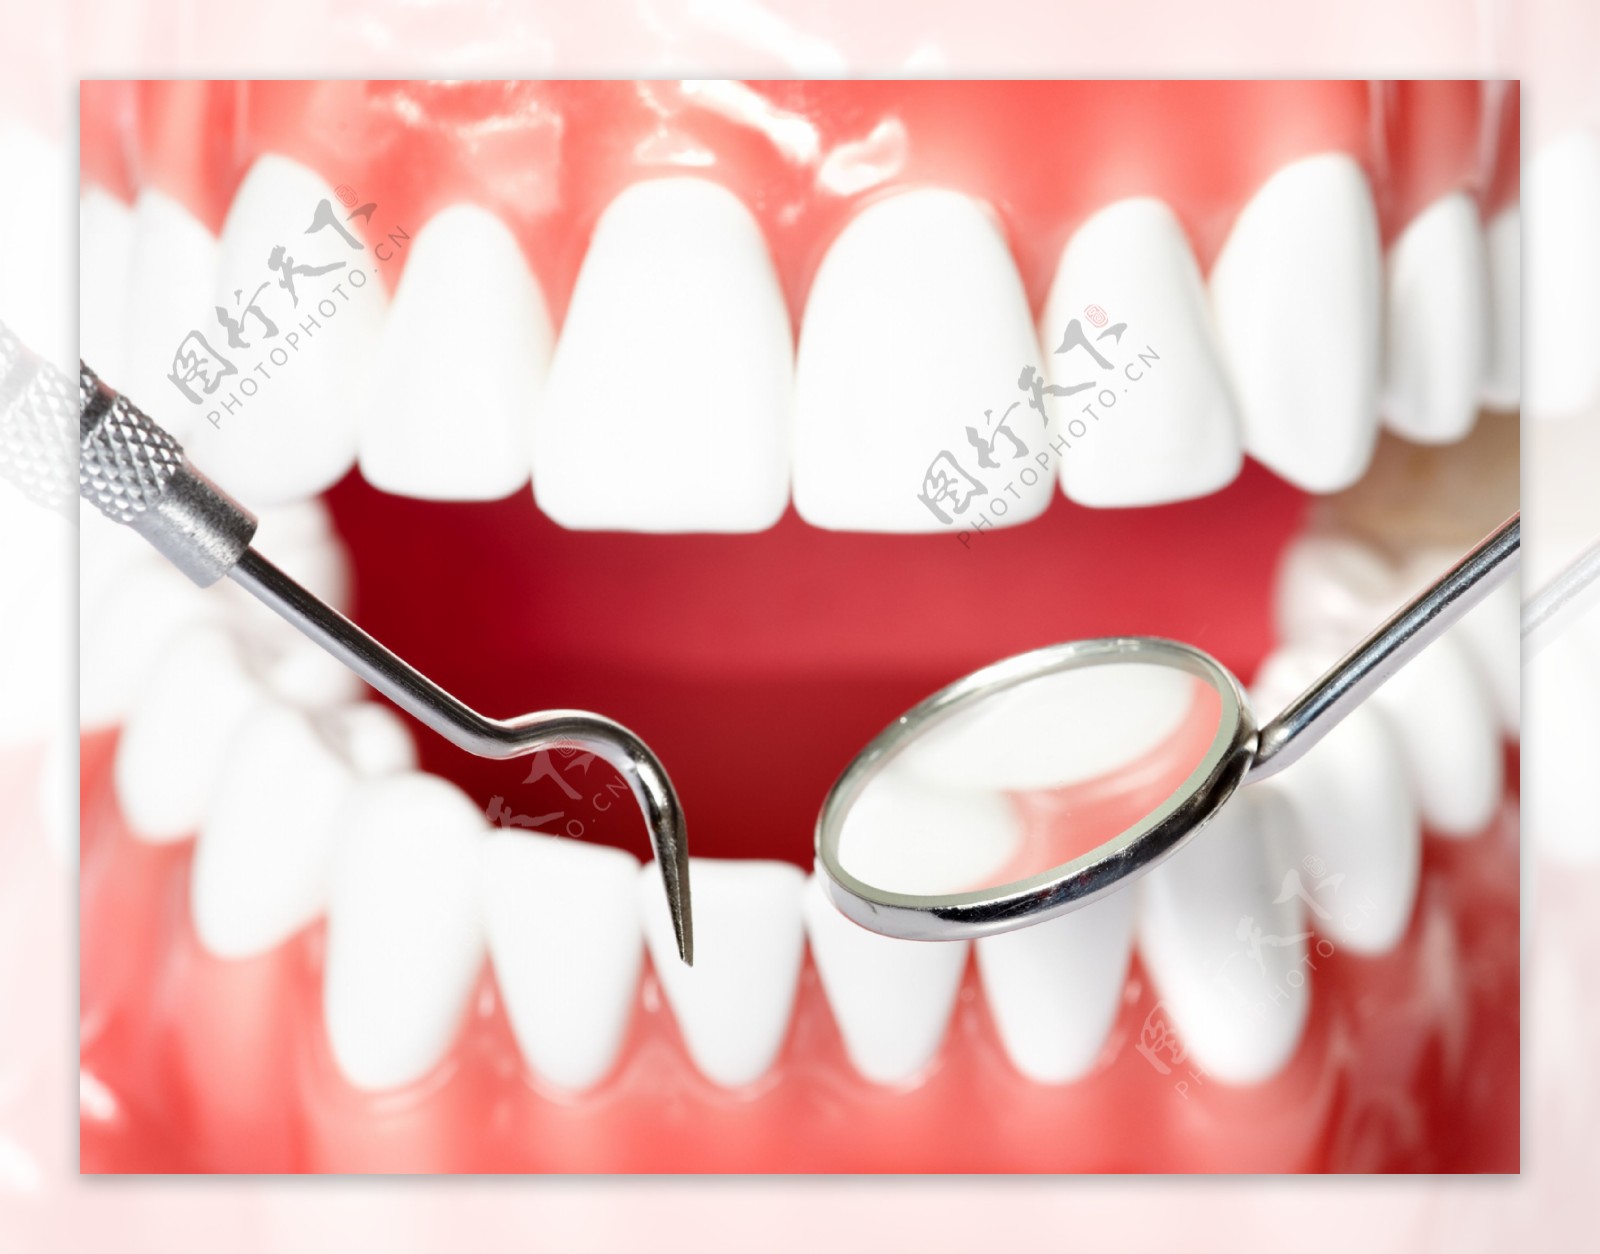 医用口腔牙齿模型图片